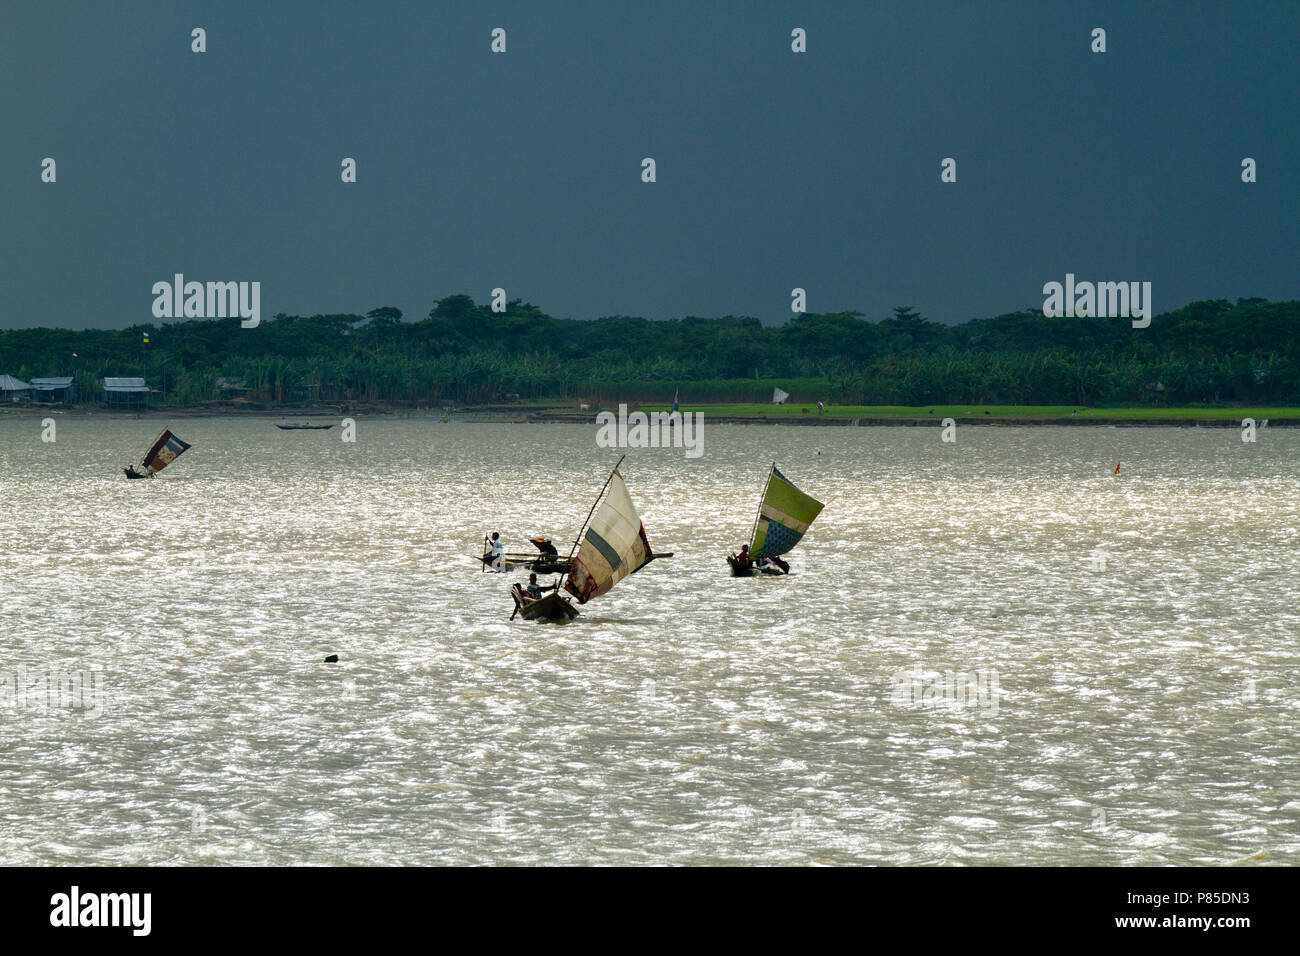 Sail boats on the Kirtonkhola River in Barisal. Bangladesh. Stock Photo